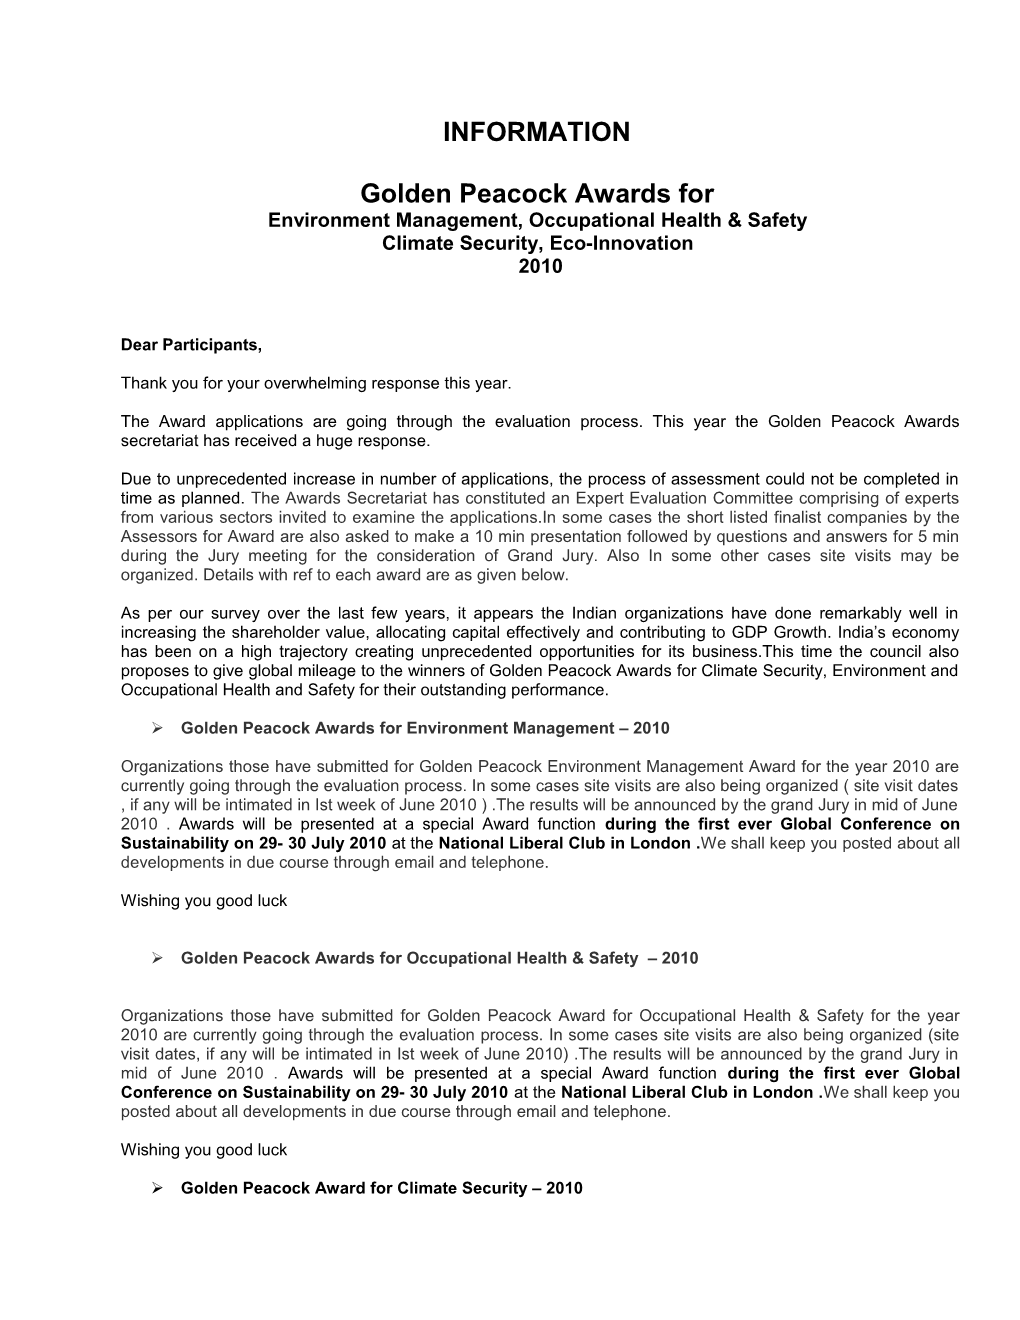 Golden Peacock Awards For